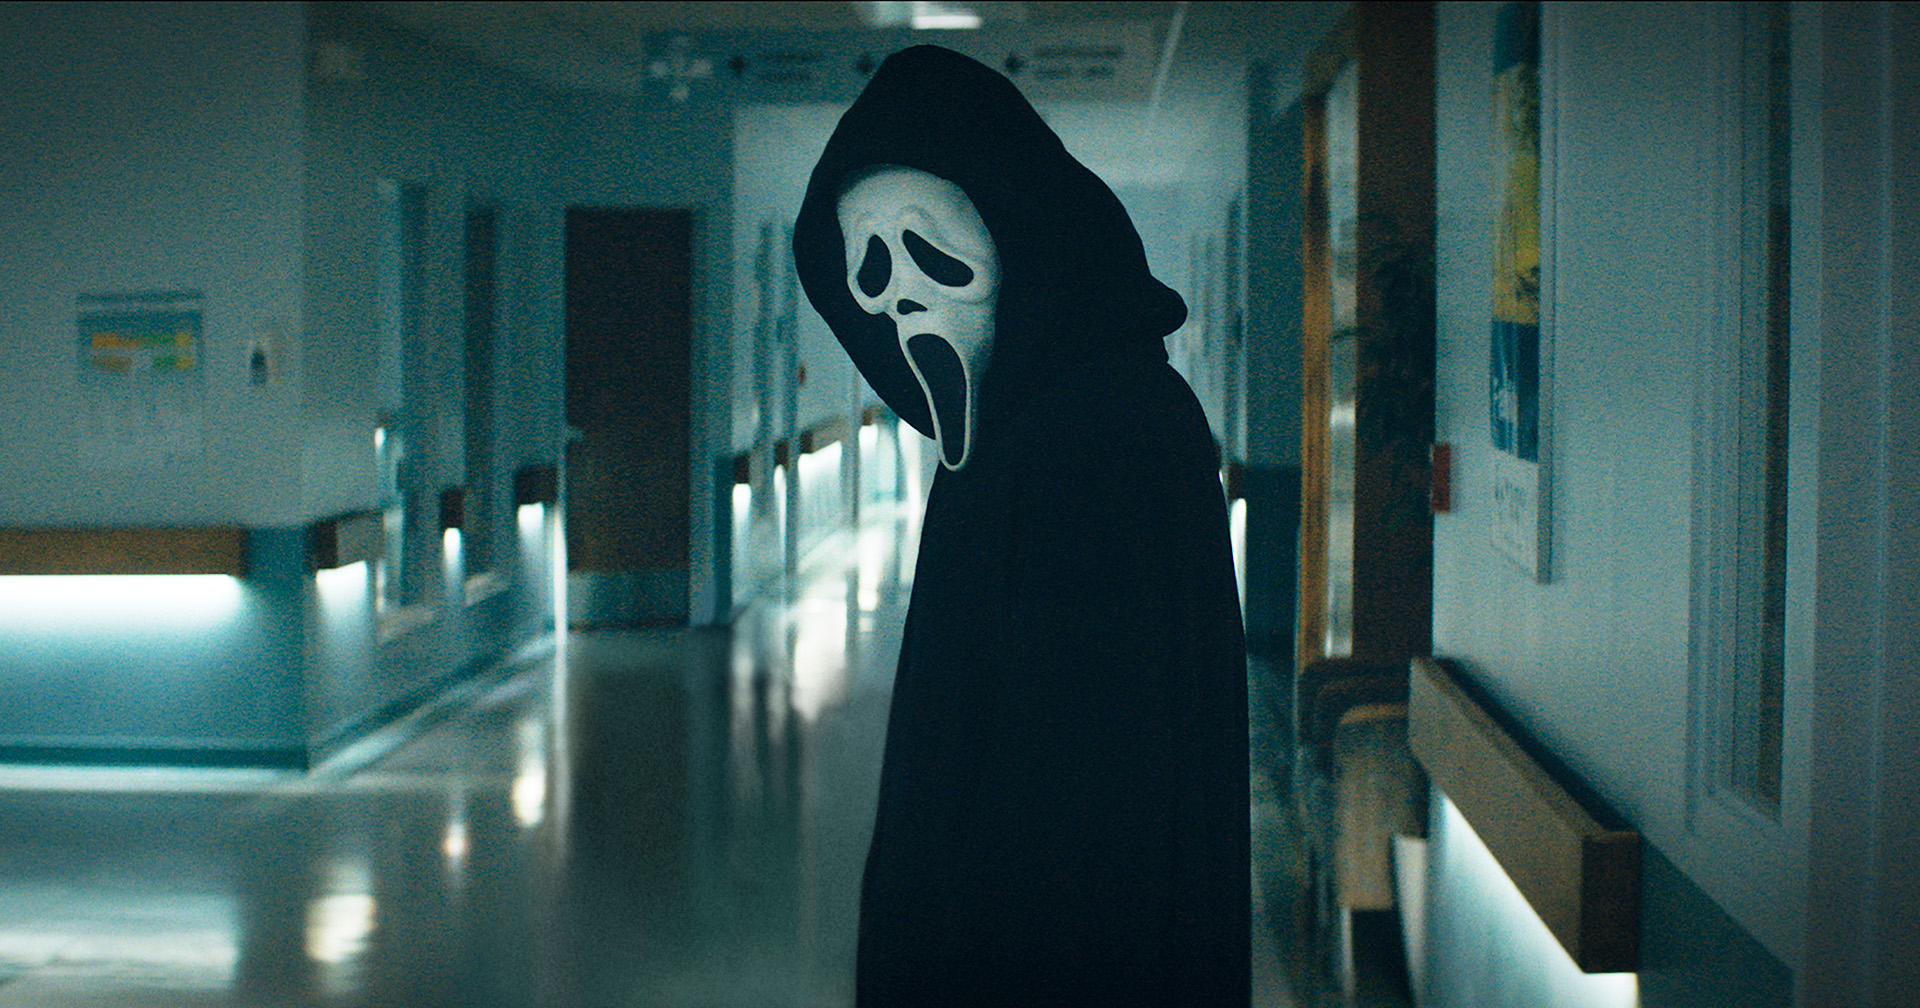 คำวิจารณ์แรก ‘Scream’ (2022) : ภาคที่ดีที่สุดในแฟรนไชส์ นับตั้งแต่ต้นฉบับปี 1996